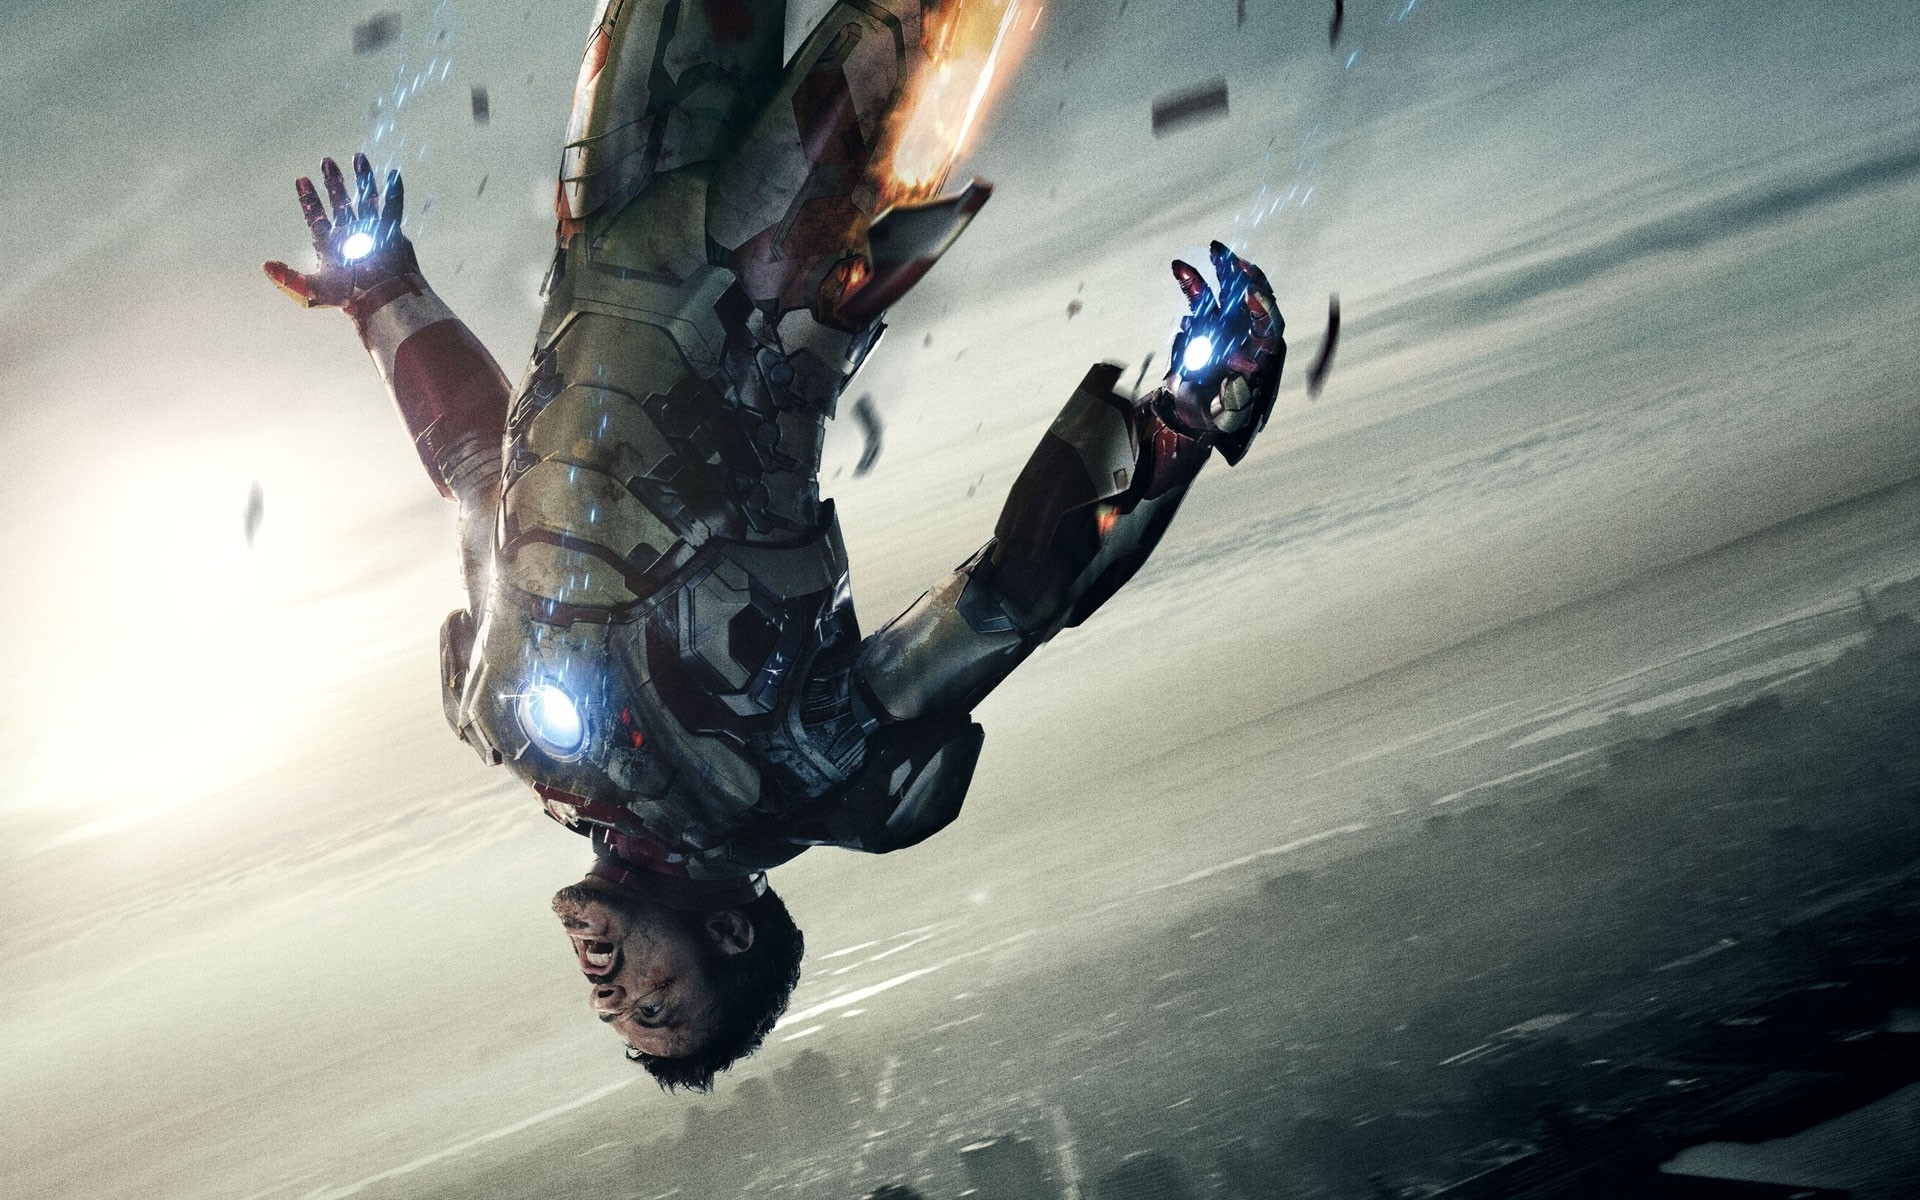 tony stark, iron man, avenger 2, fly, city, movie, hd, wallpaper